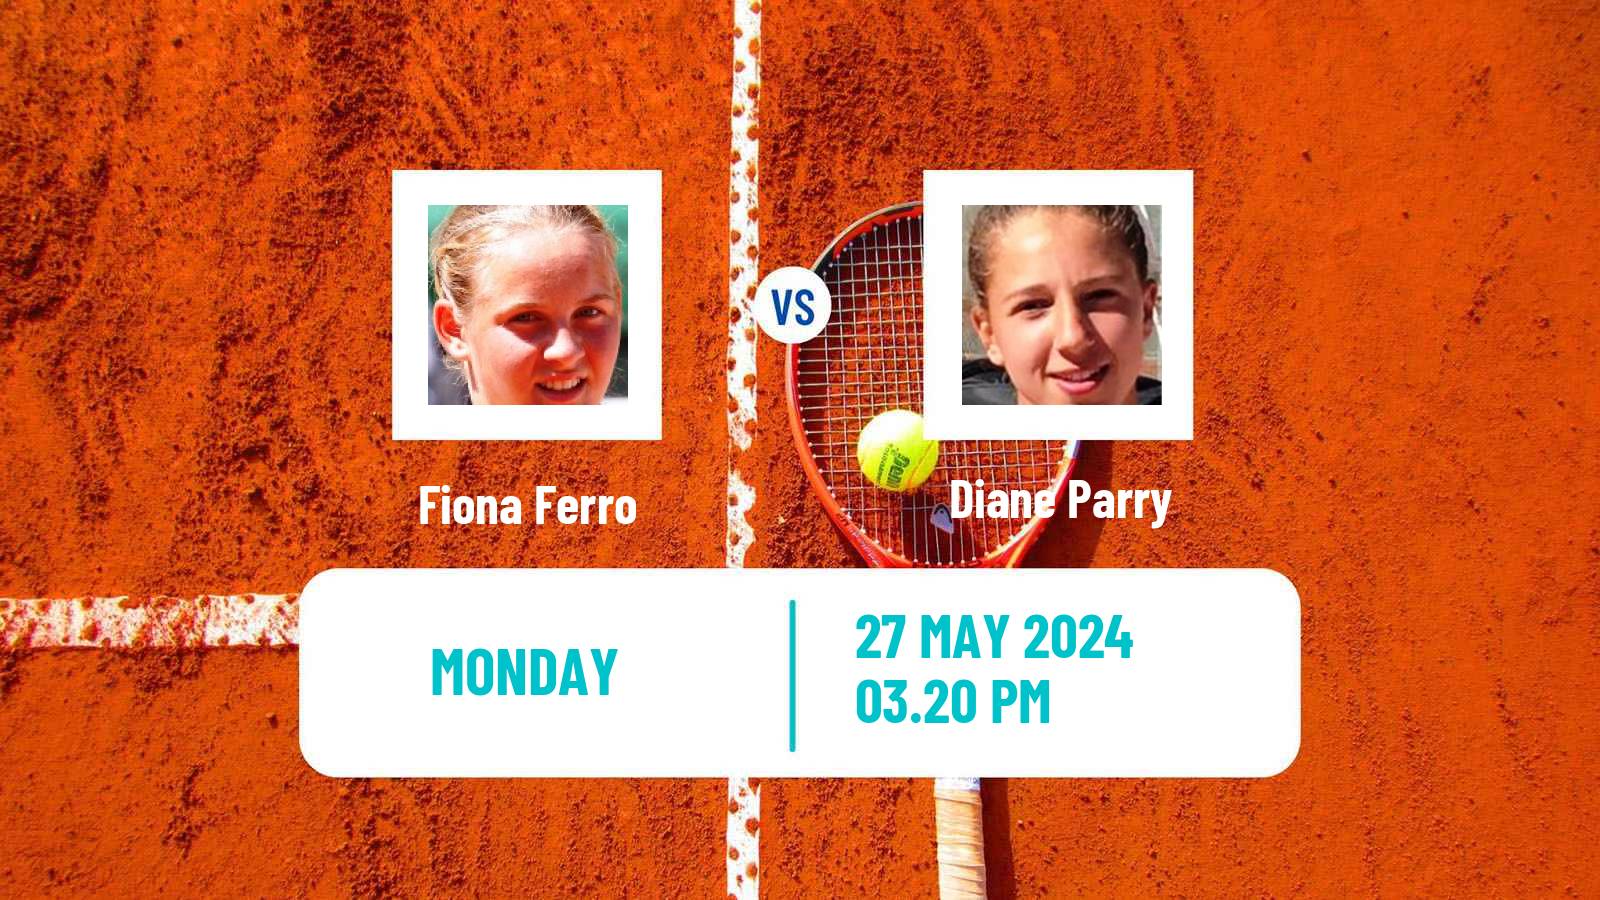 Tennis WTA Roland Garros Fiona Ferro - Diane Parry